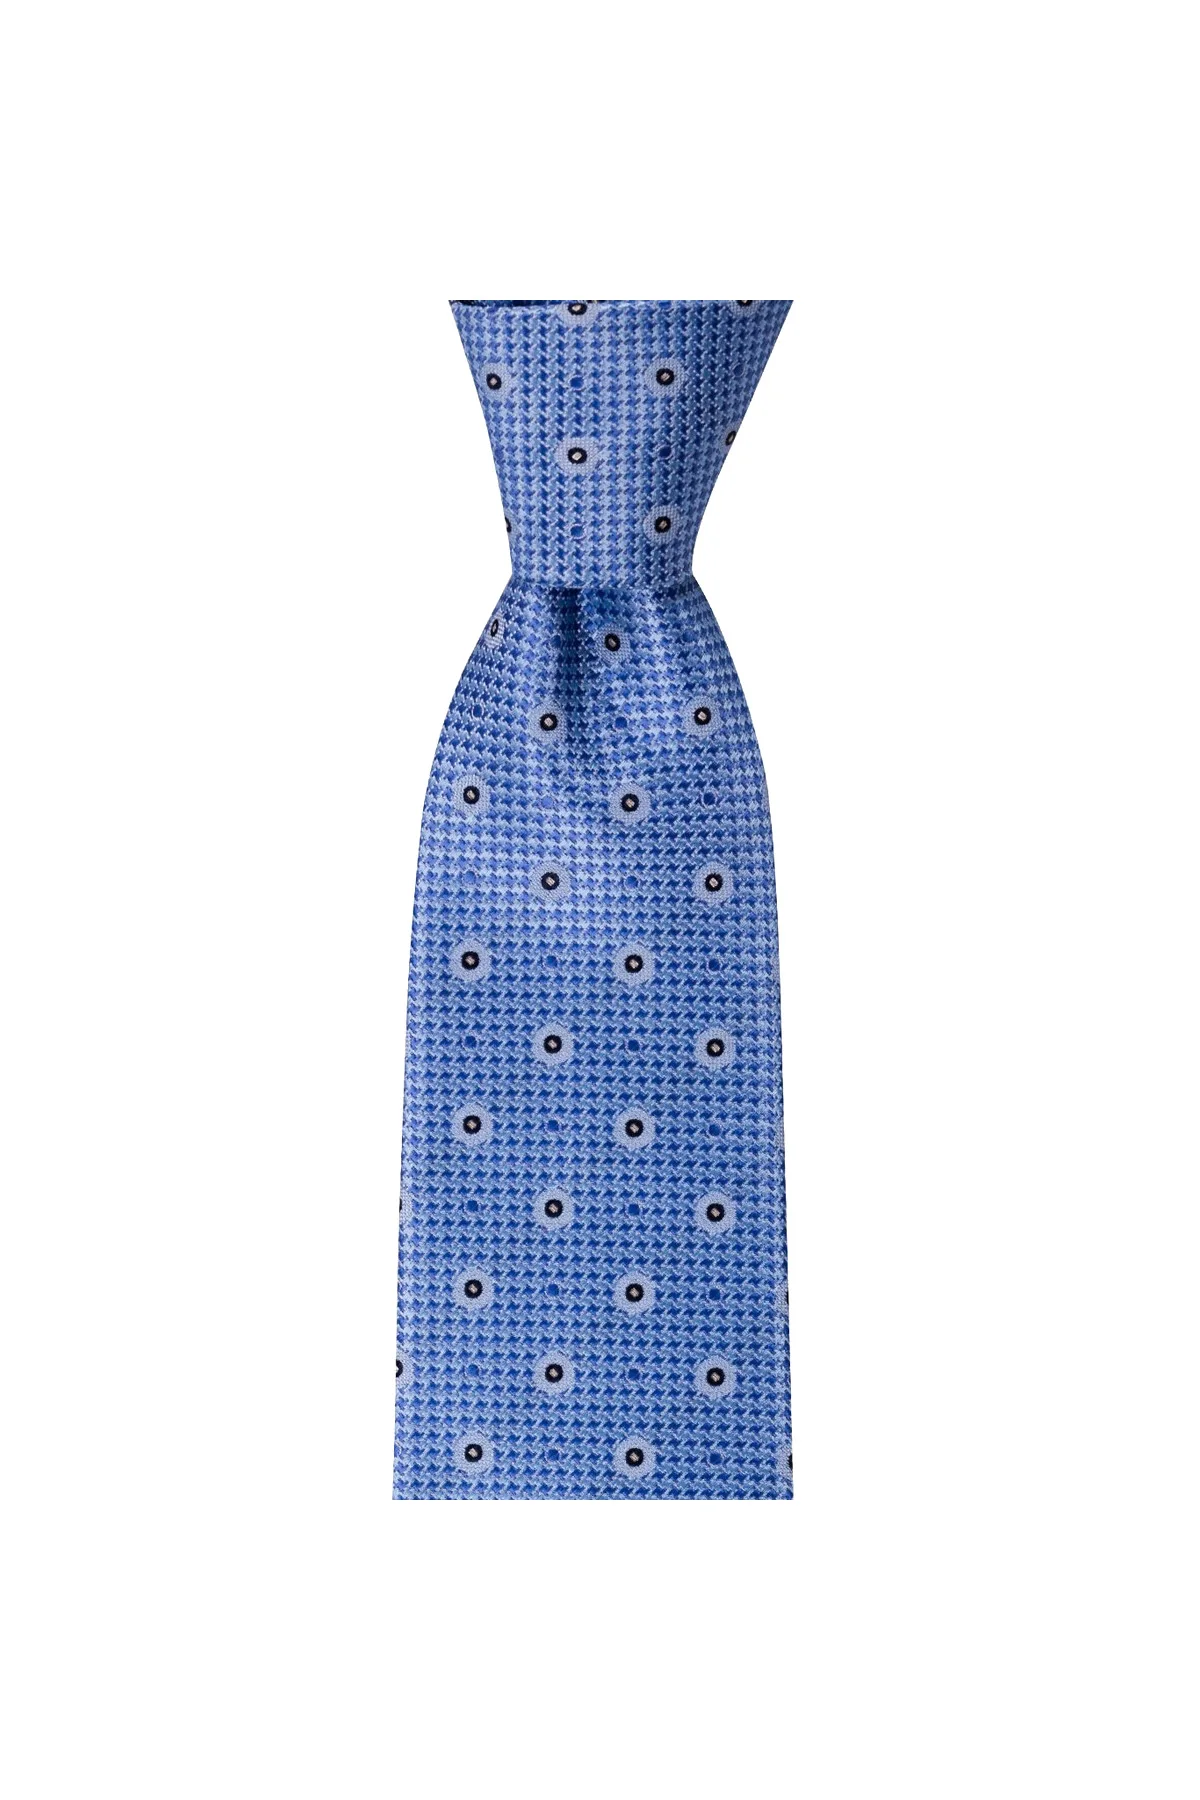 Мужской галстук классического дизайна, Сделано в Италии, ширина 8 см, длина 145 см, отличный наряд, классические мужские костюмы